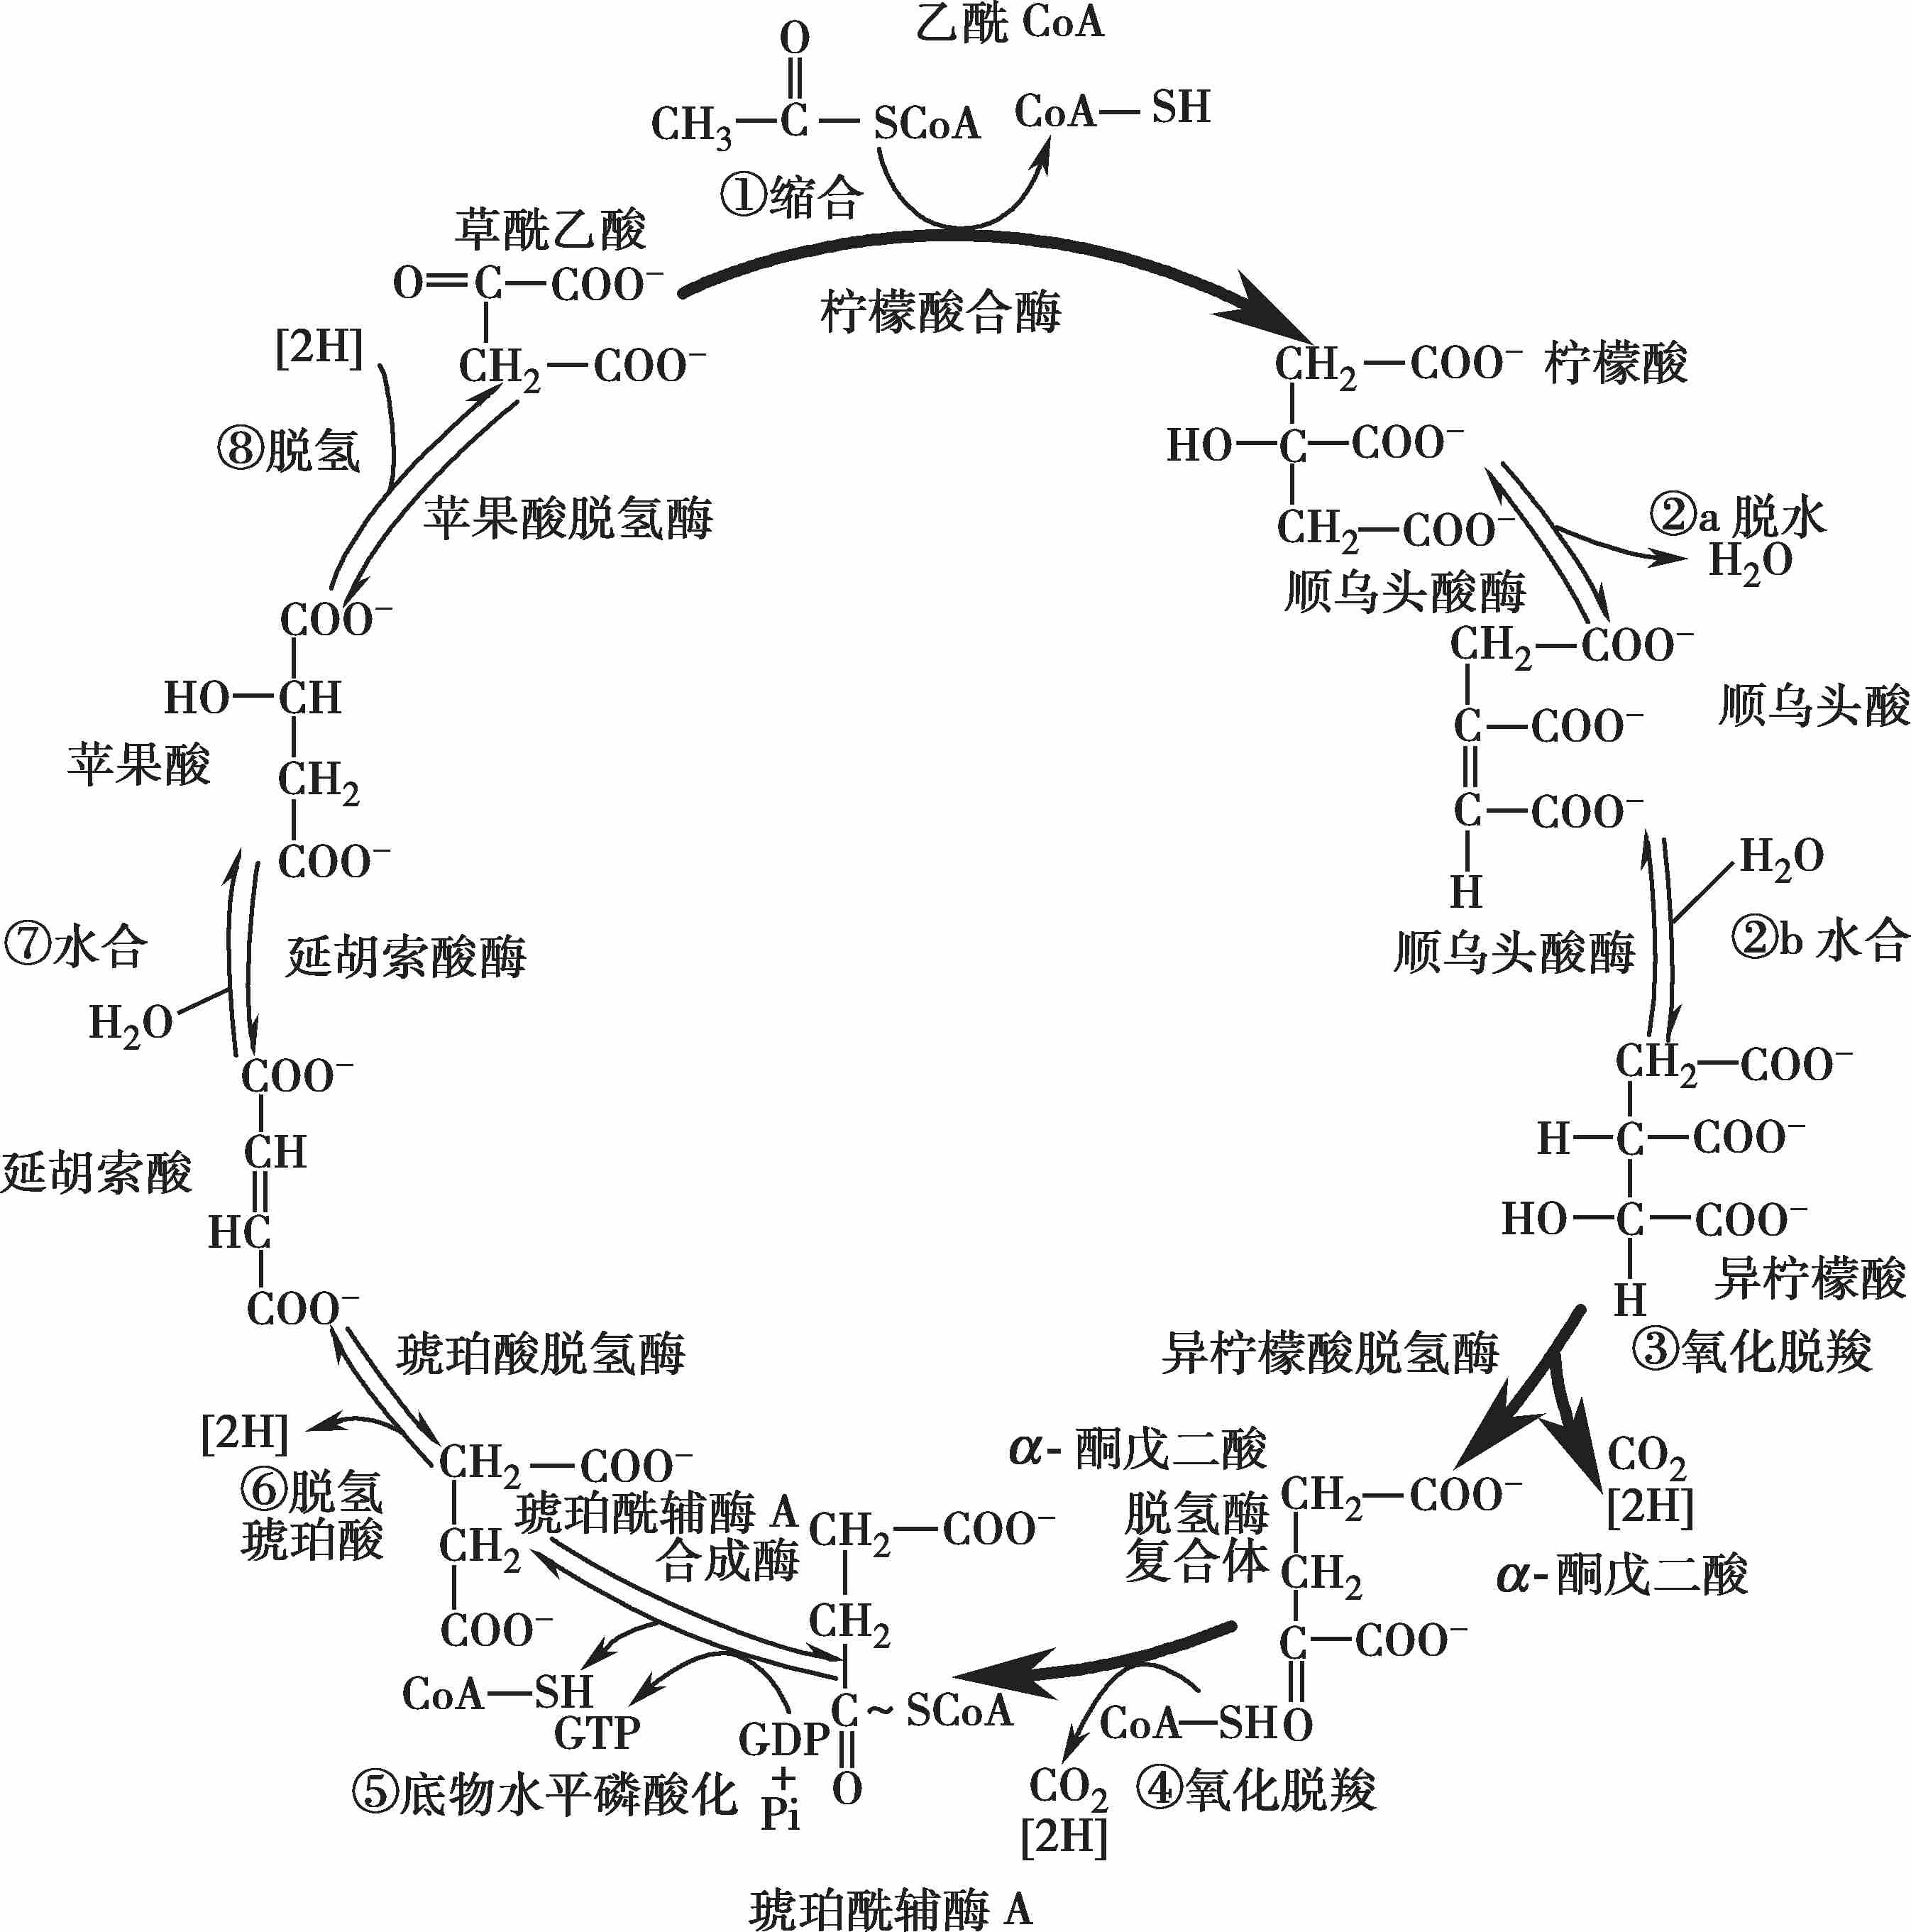 三羧酸循环反应过程可归纳如图5-4.